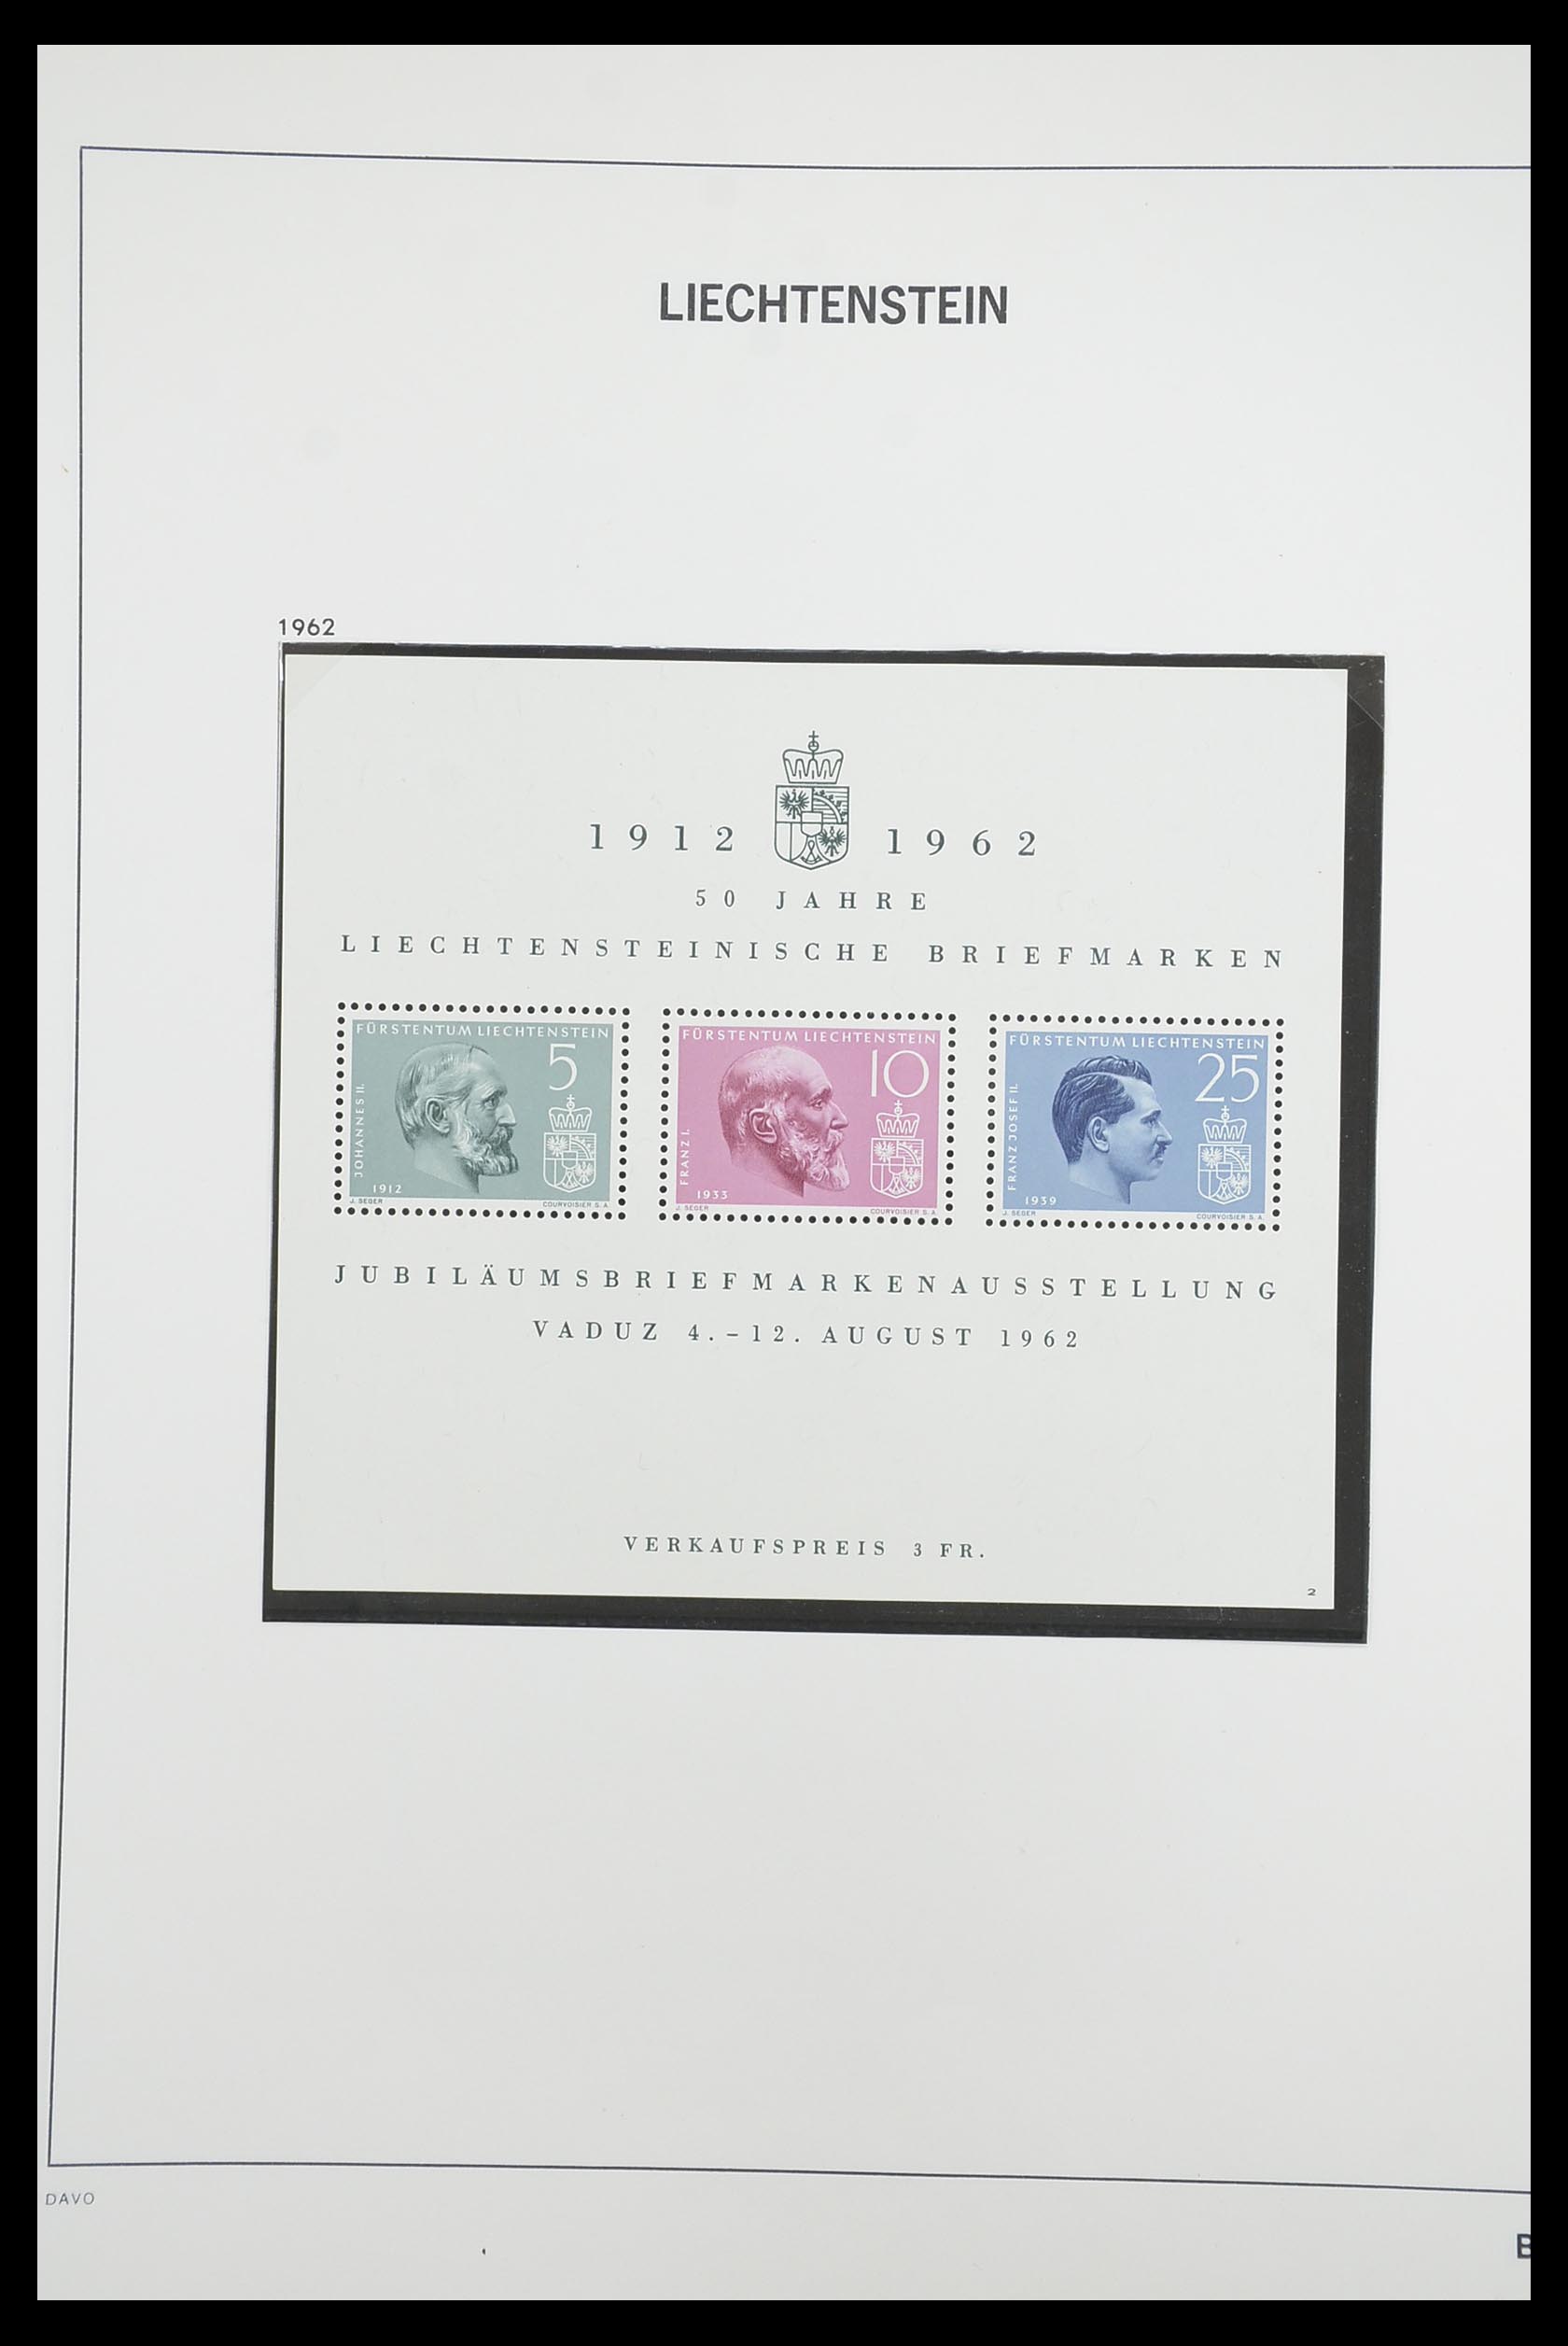 33890 082 - Stamp collection 33890 Liechtenstein 1912-1986.